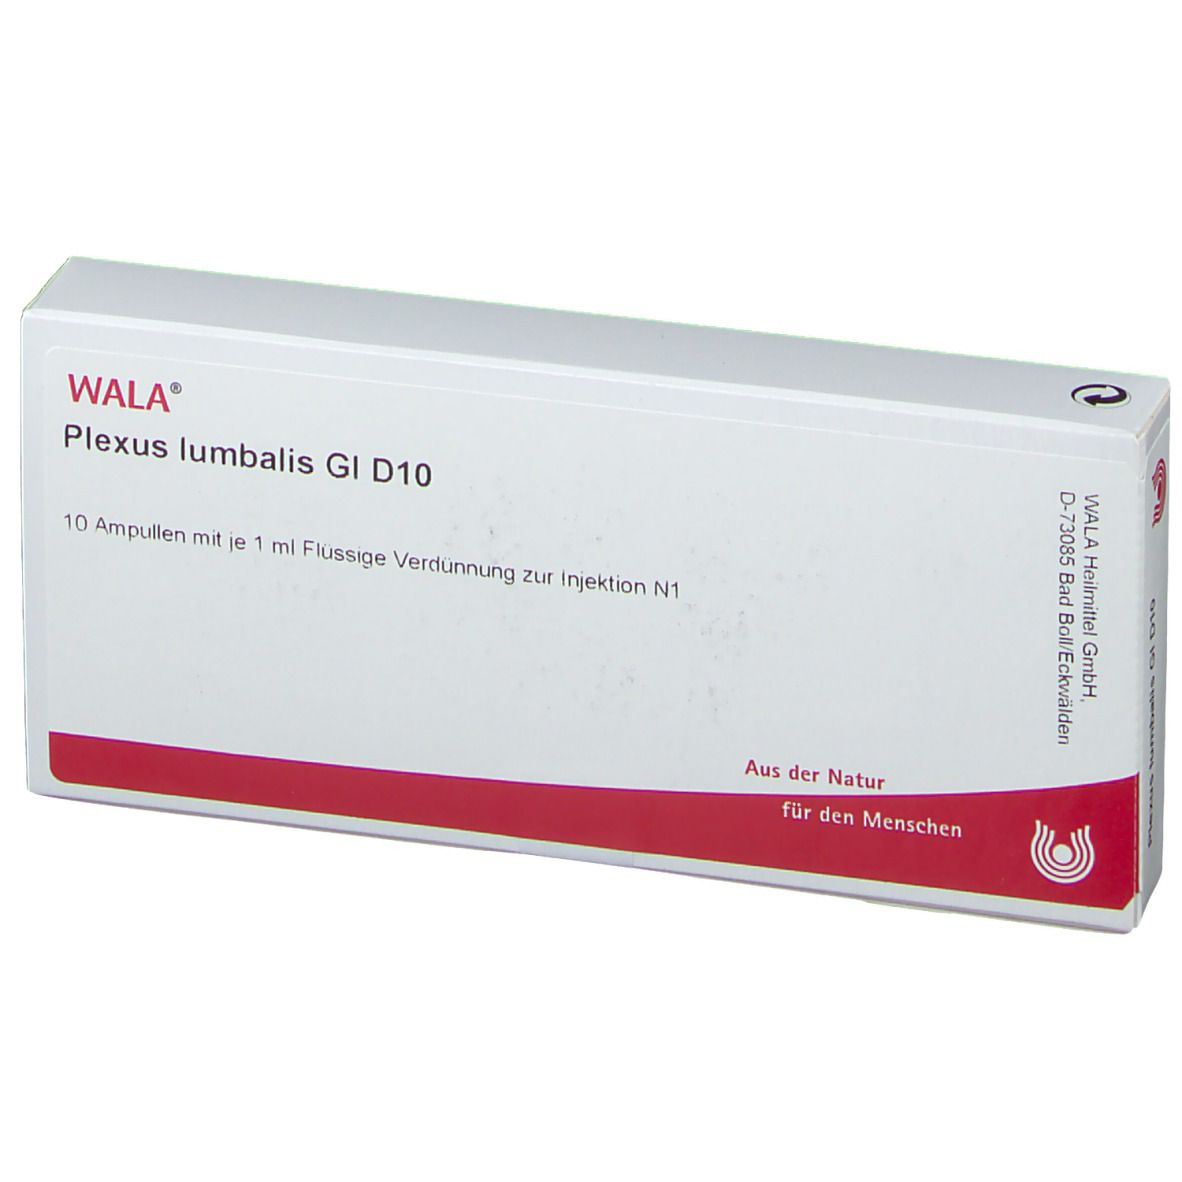 WALA® Plexus lumbalis Gl D 10